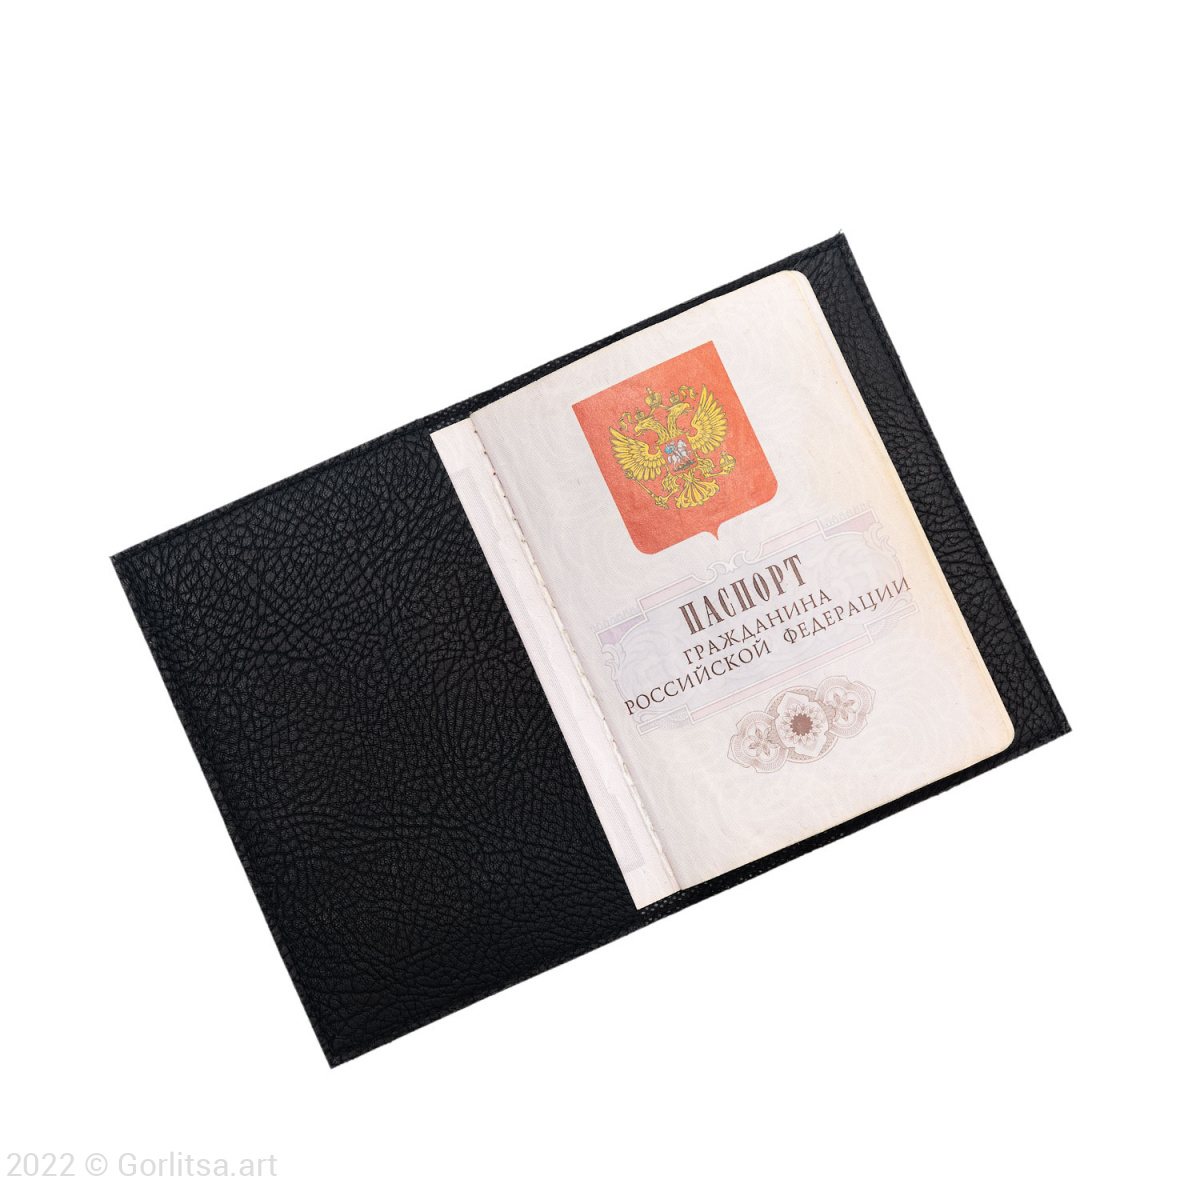 Обложка для паспорта «Геометрия. Верхний угол» 900/205, экокожа цвет: чёрный /золото экокожа Арт-студия «Ремесло» фото 2